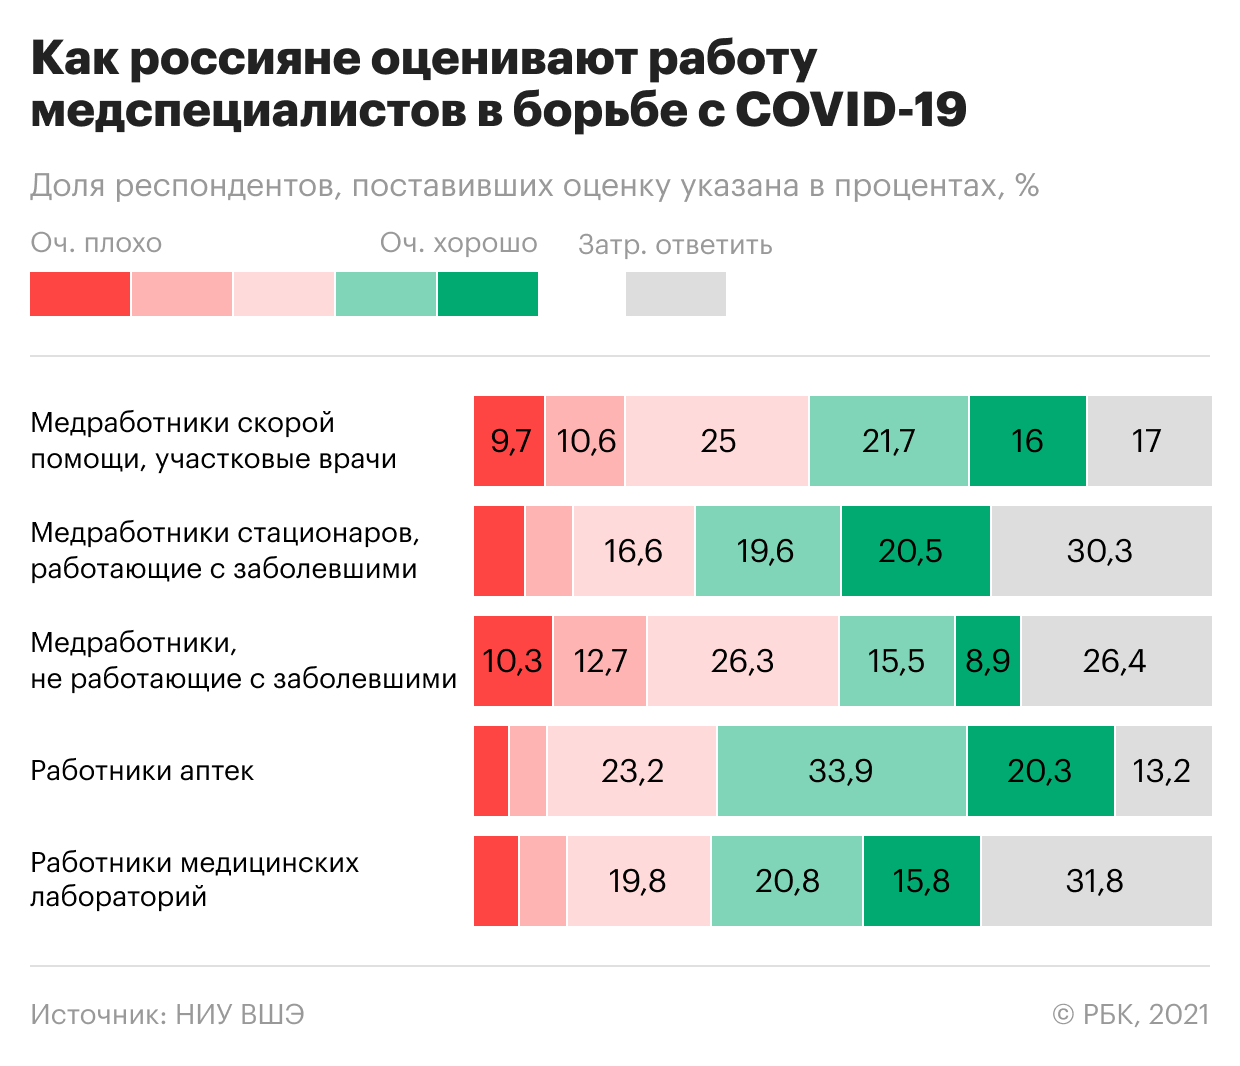 Россияне оценили работу провизоров в пандемию выше работы врачей